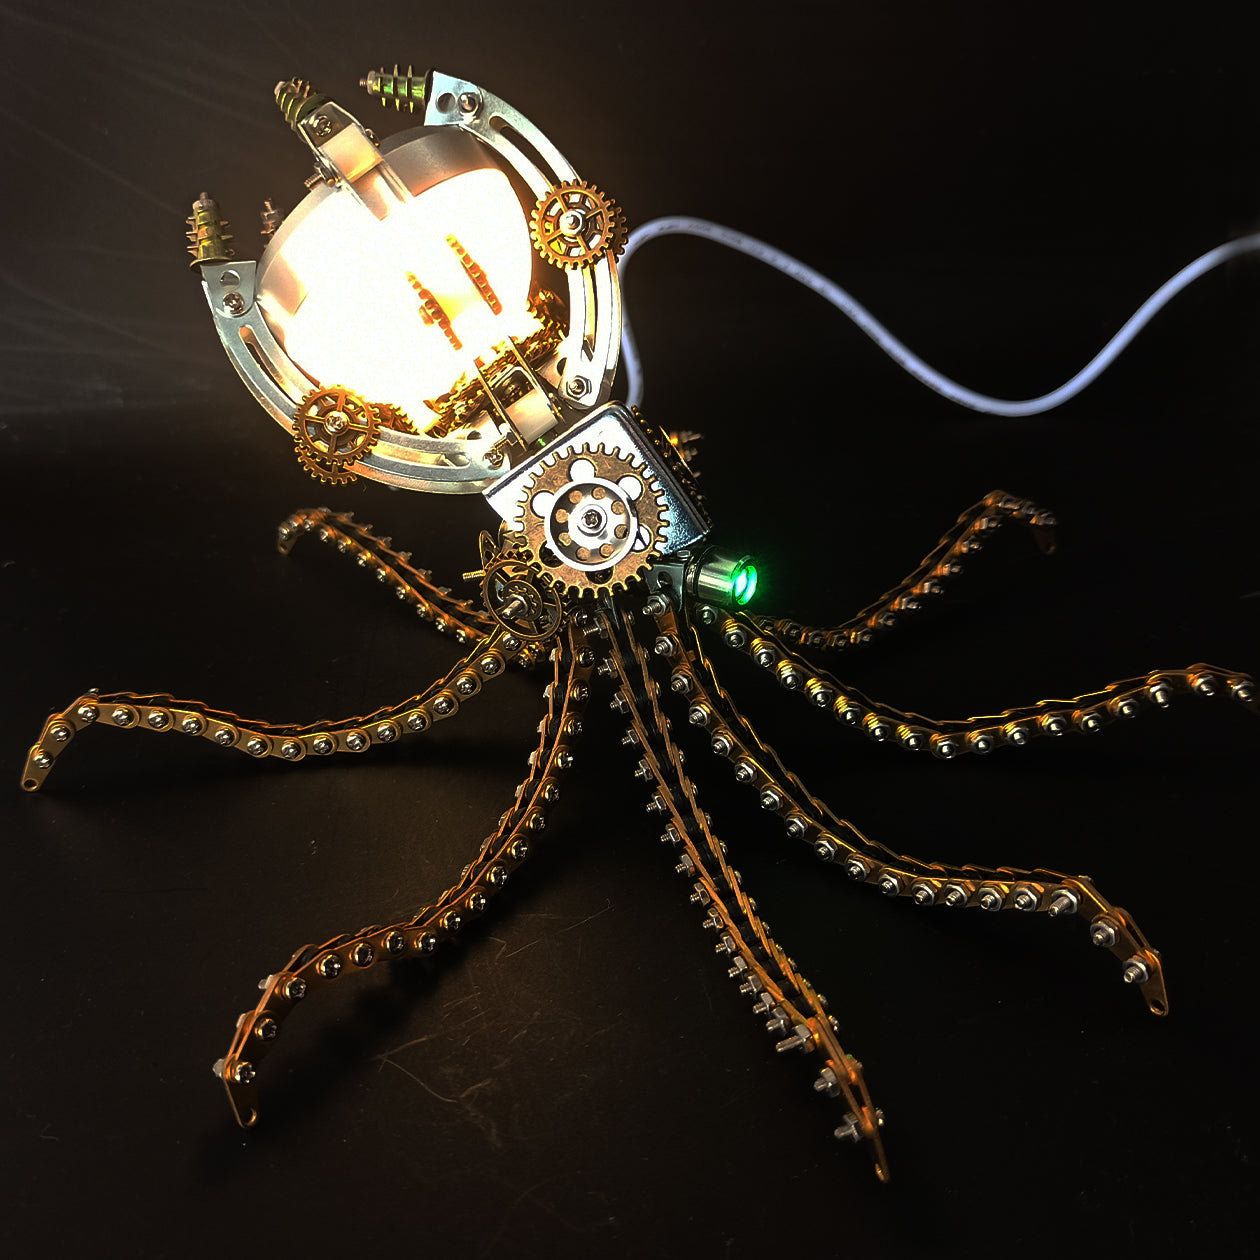 3D Mechanical Octopus